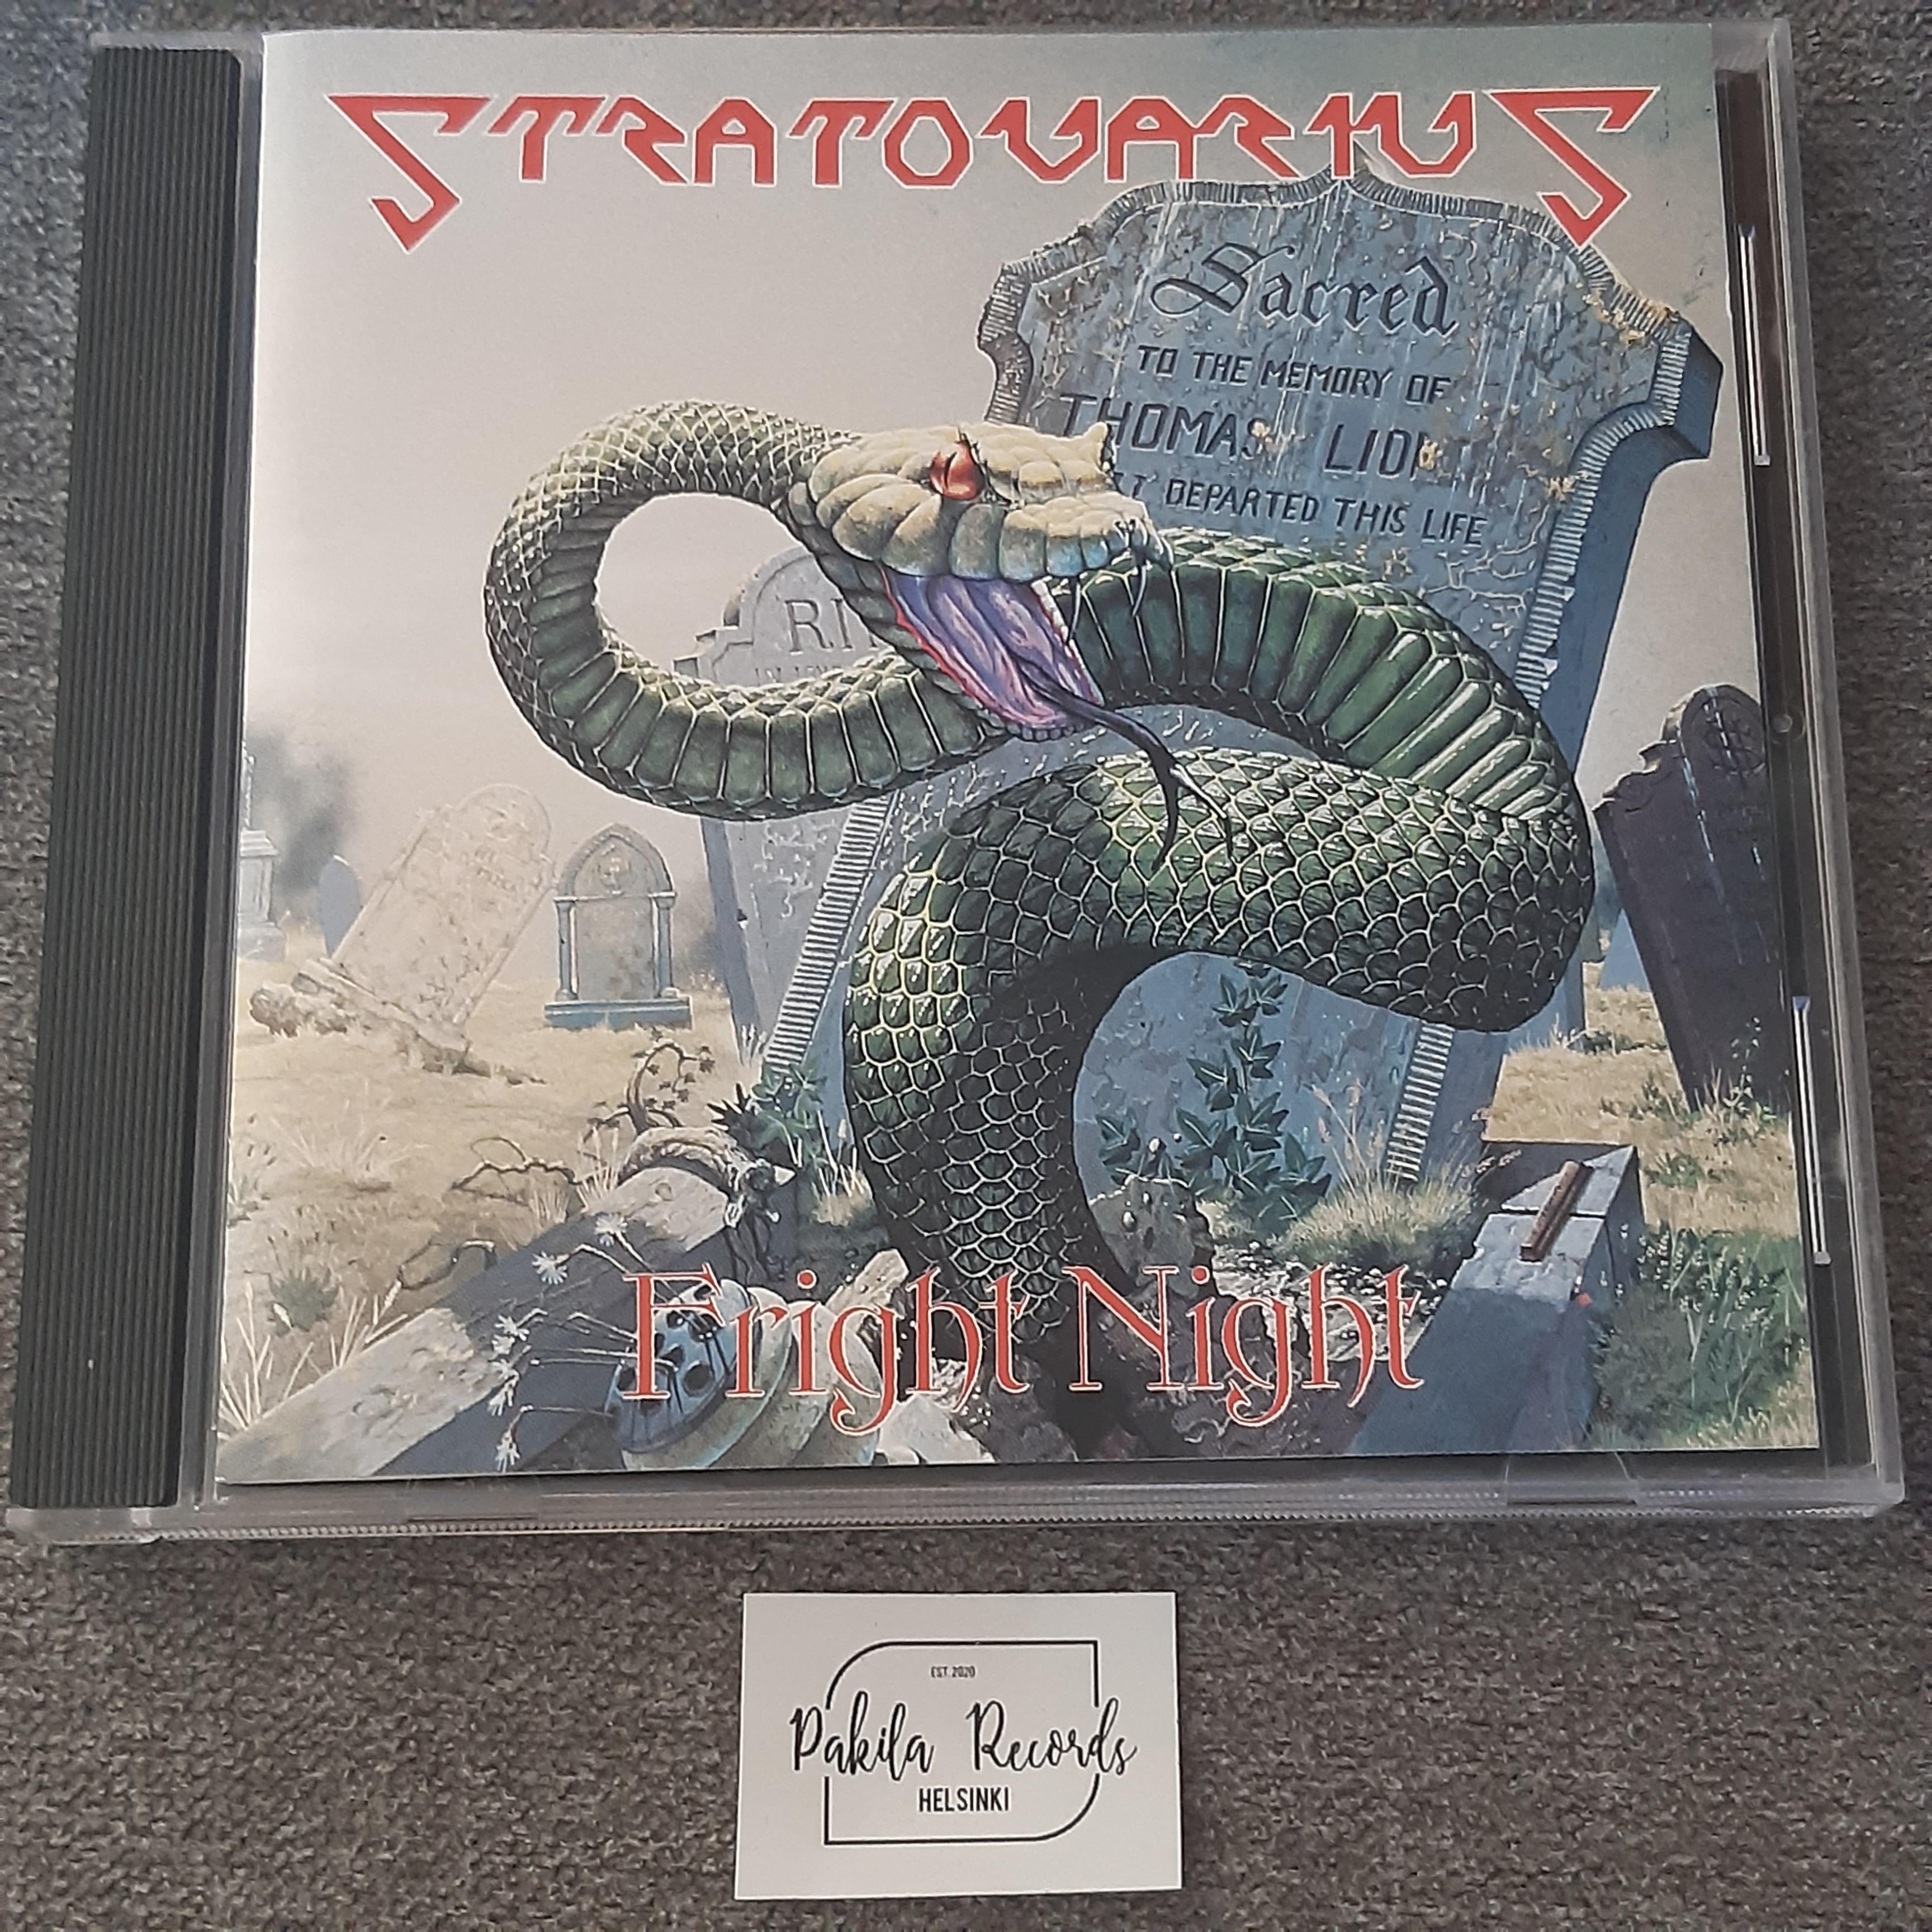 Stratovarius - Fright Night - CD (käytetty)